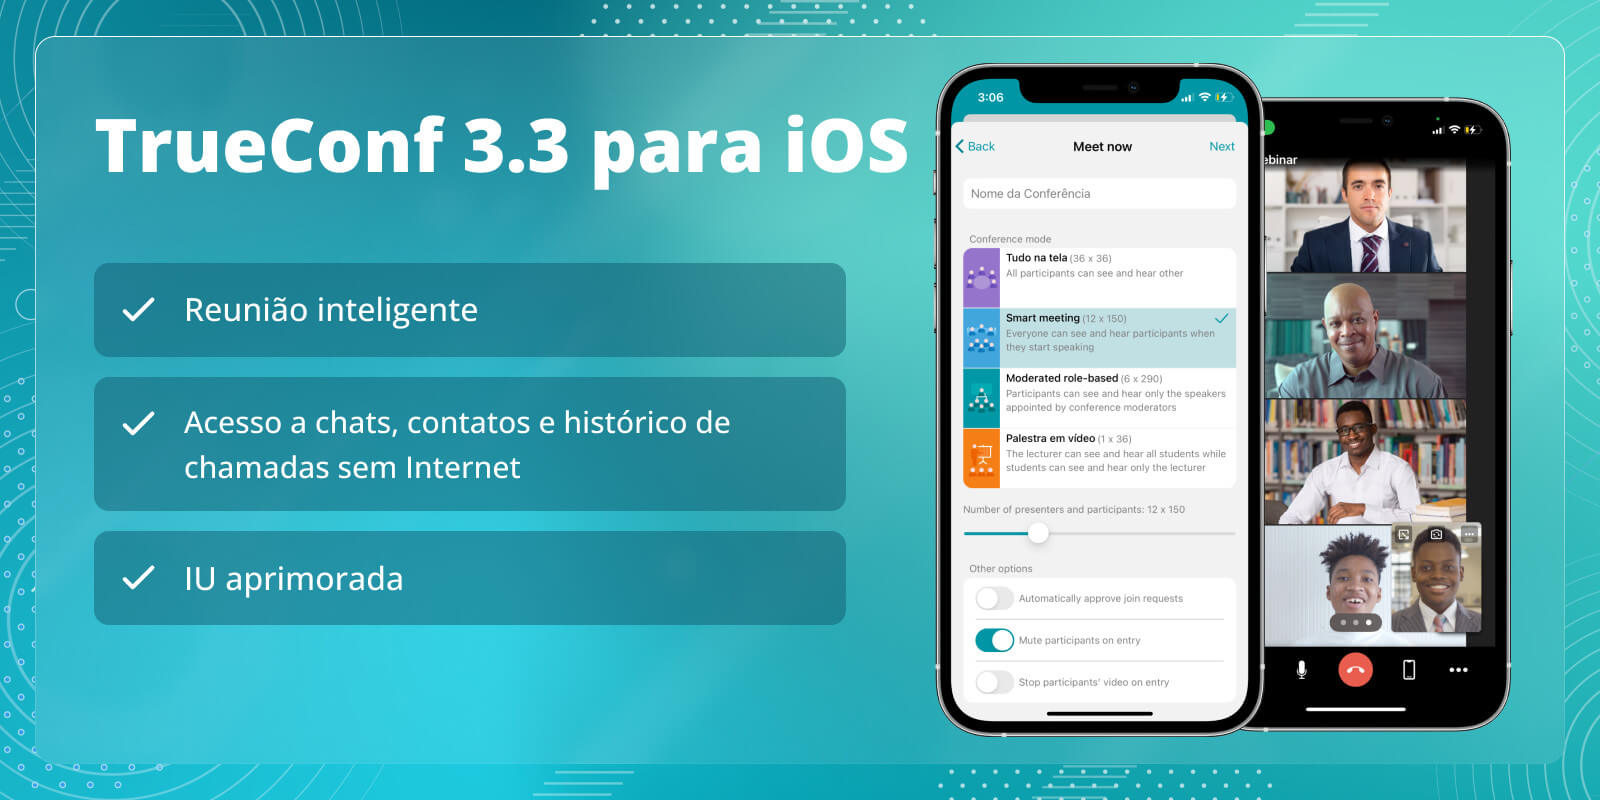 TrueConf 3.3 para iOS: nova interface do usuário, modo de reunião inteligente, acesso offline a chats, contatos e histórico de chamadas 9